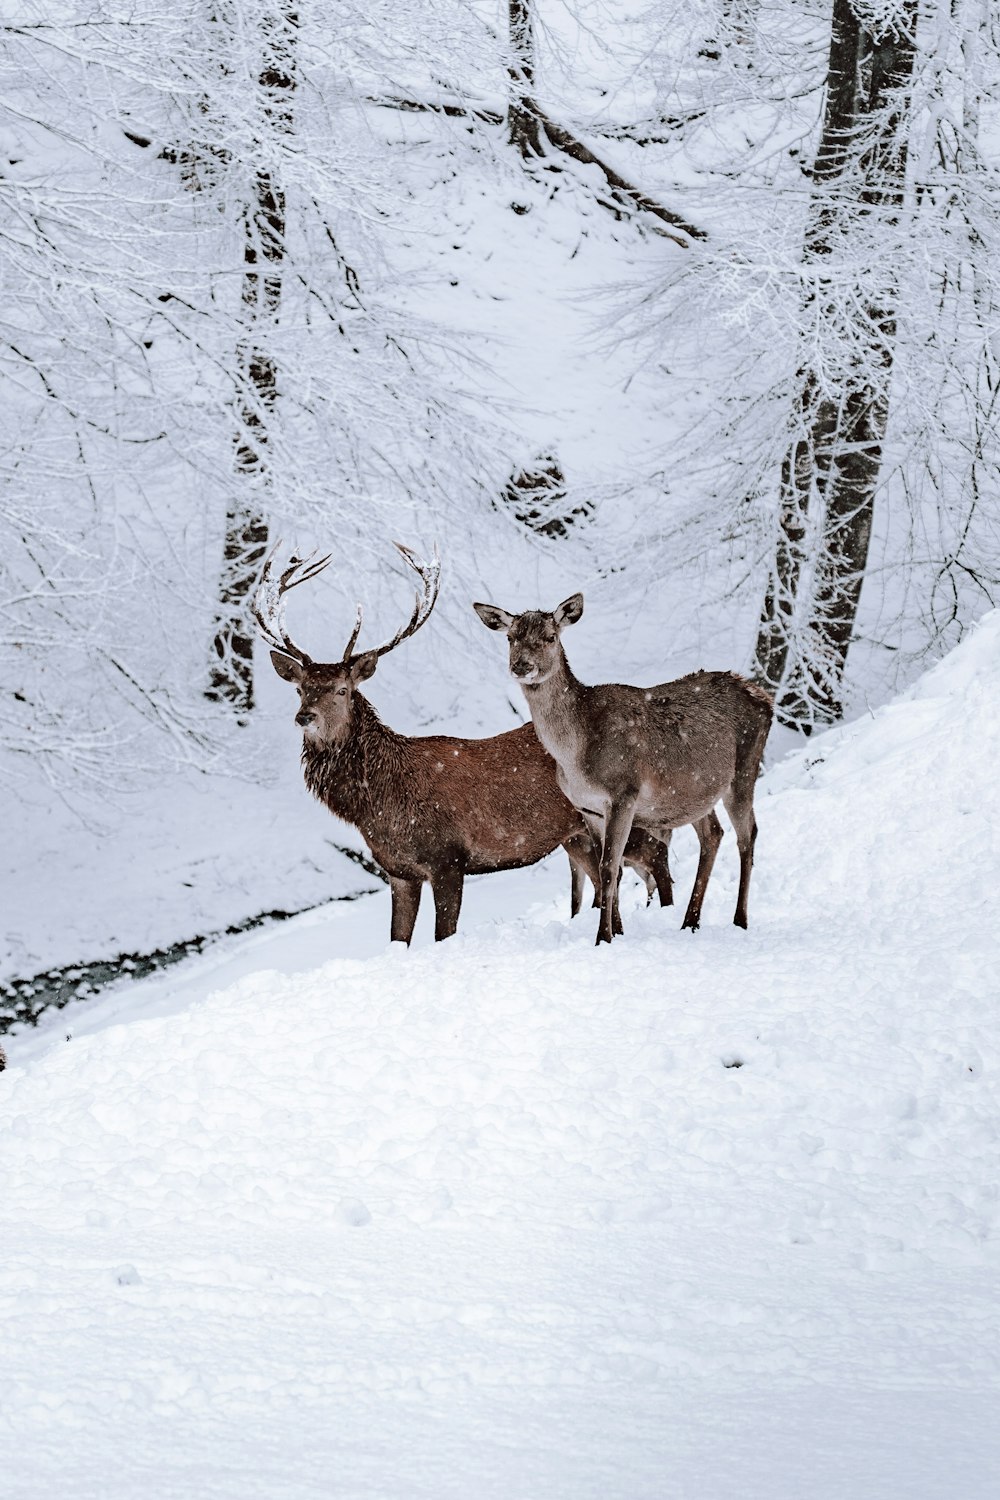 two brown deer on snow